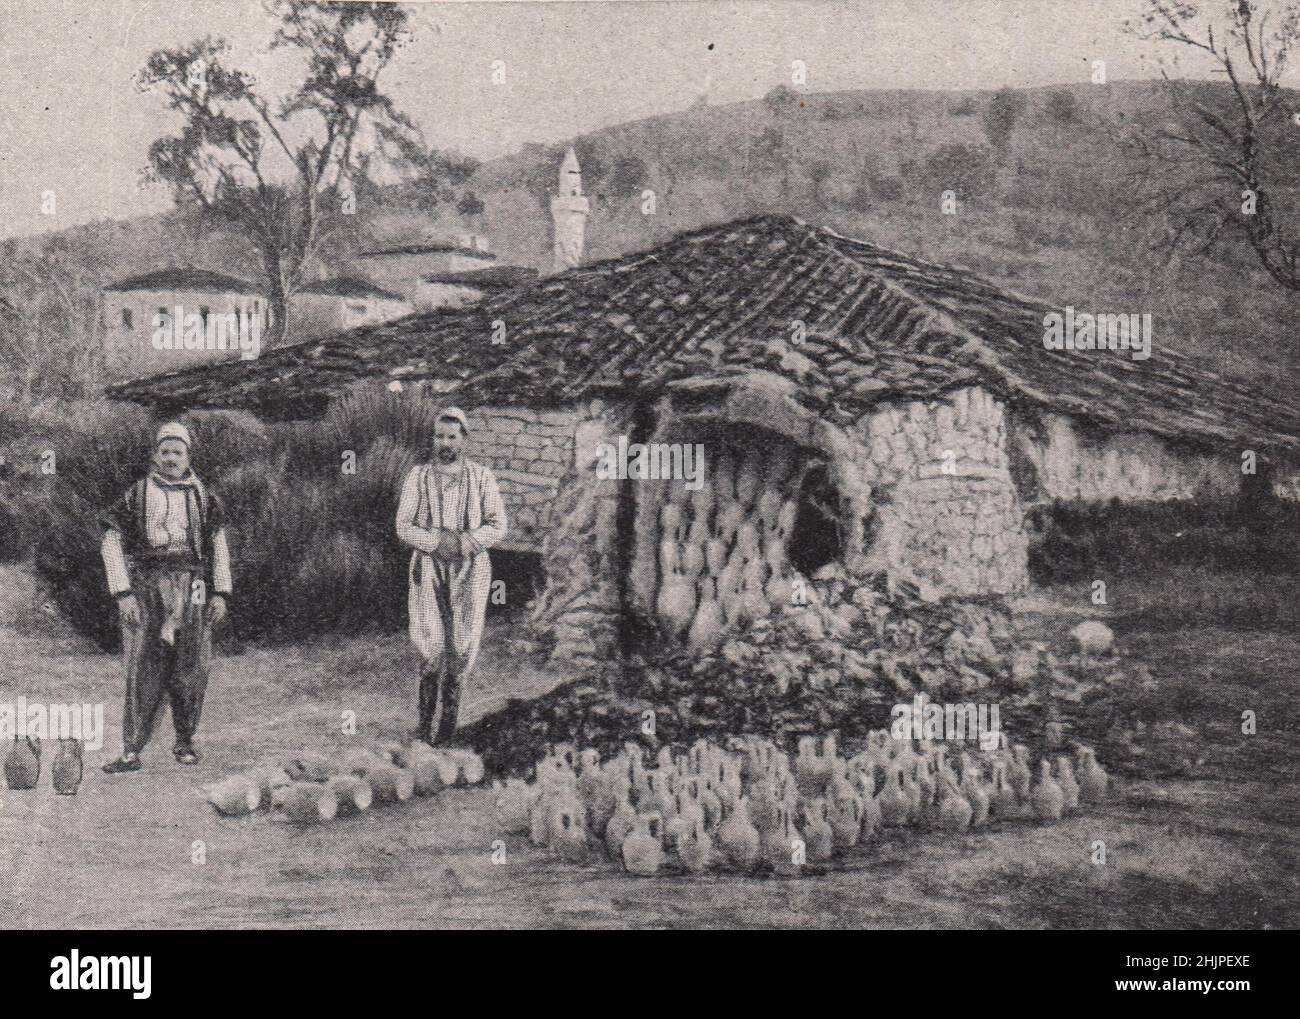 Albanian pottery Kiln near Berat (1923) Stock Photo